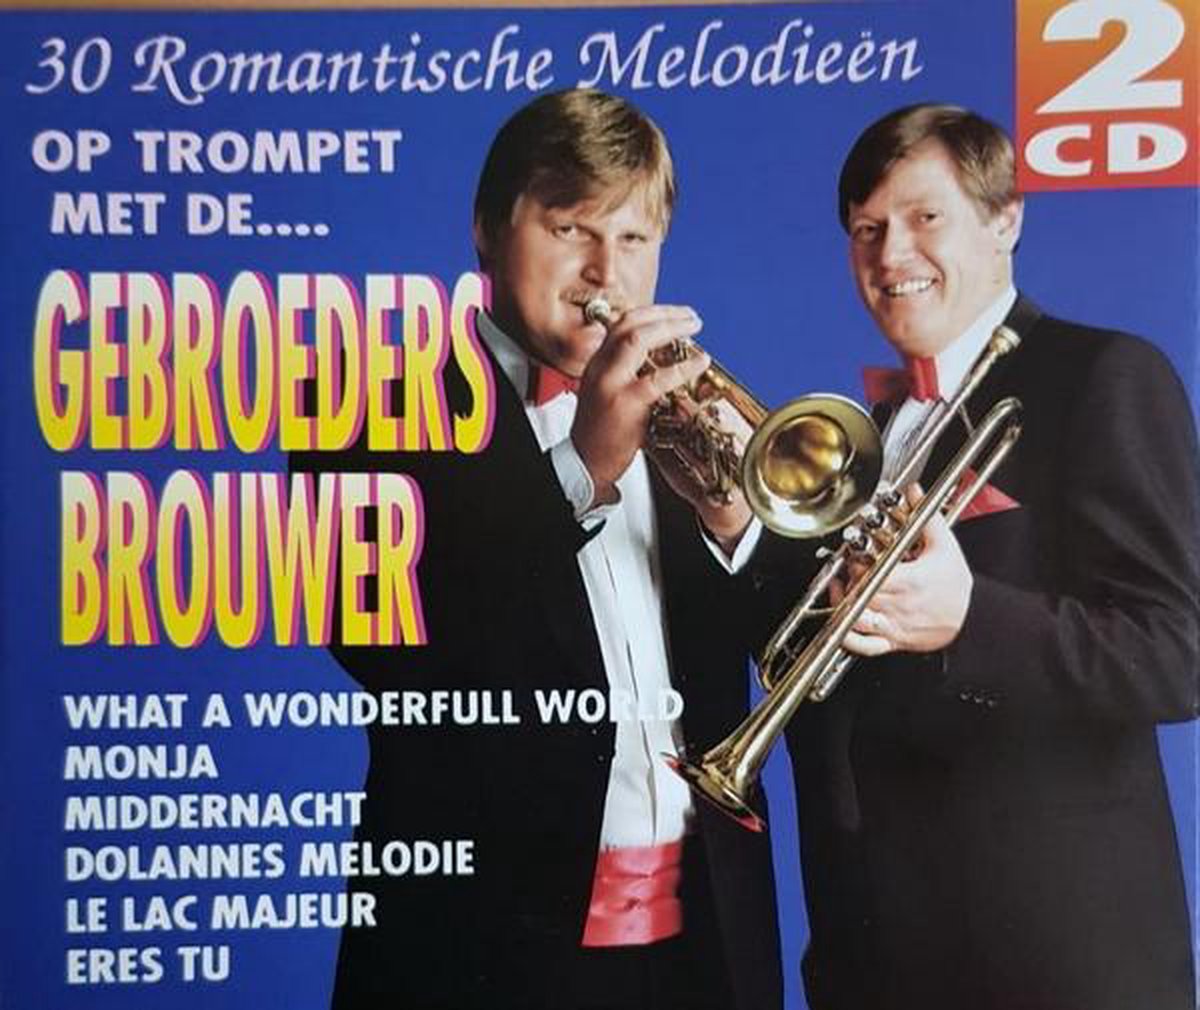 30 Romantische Melodieën op trompet met de Gebroeders Brouwer - Gebroeders Brouwer